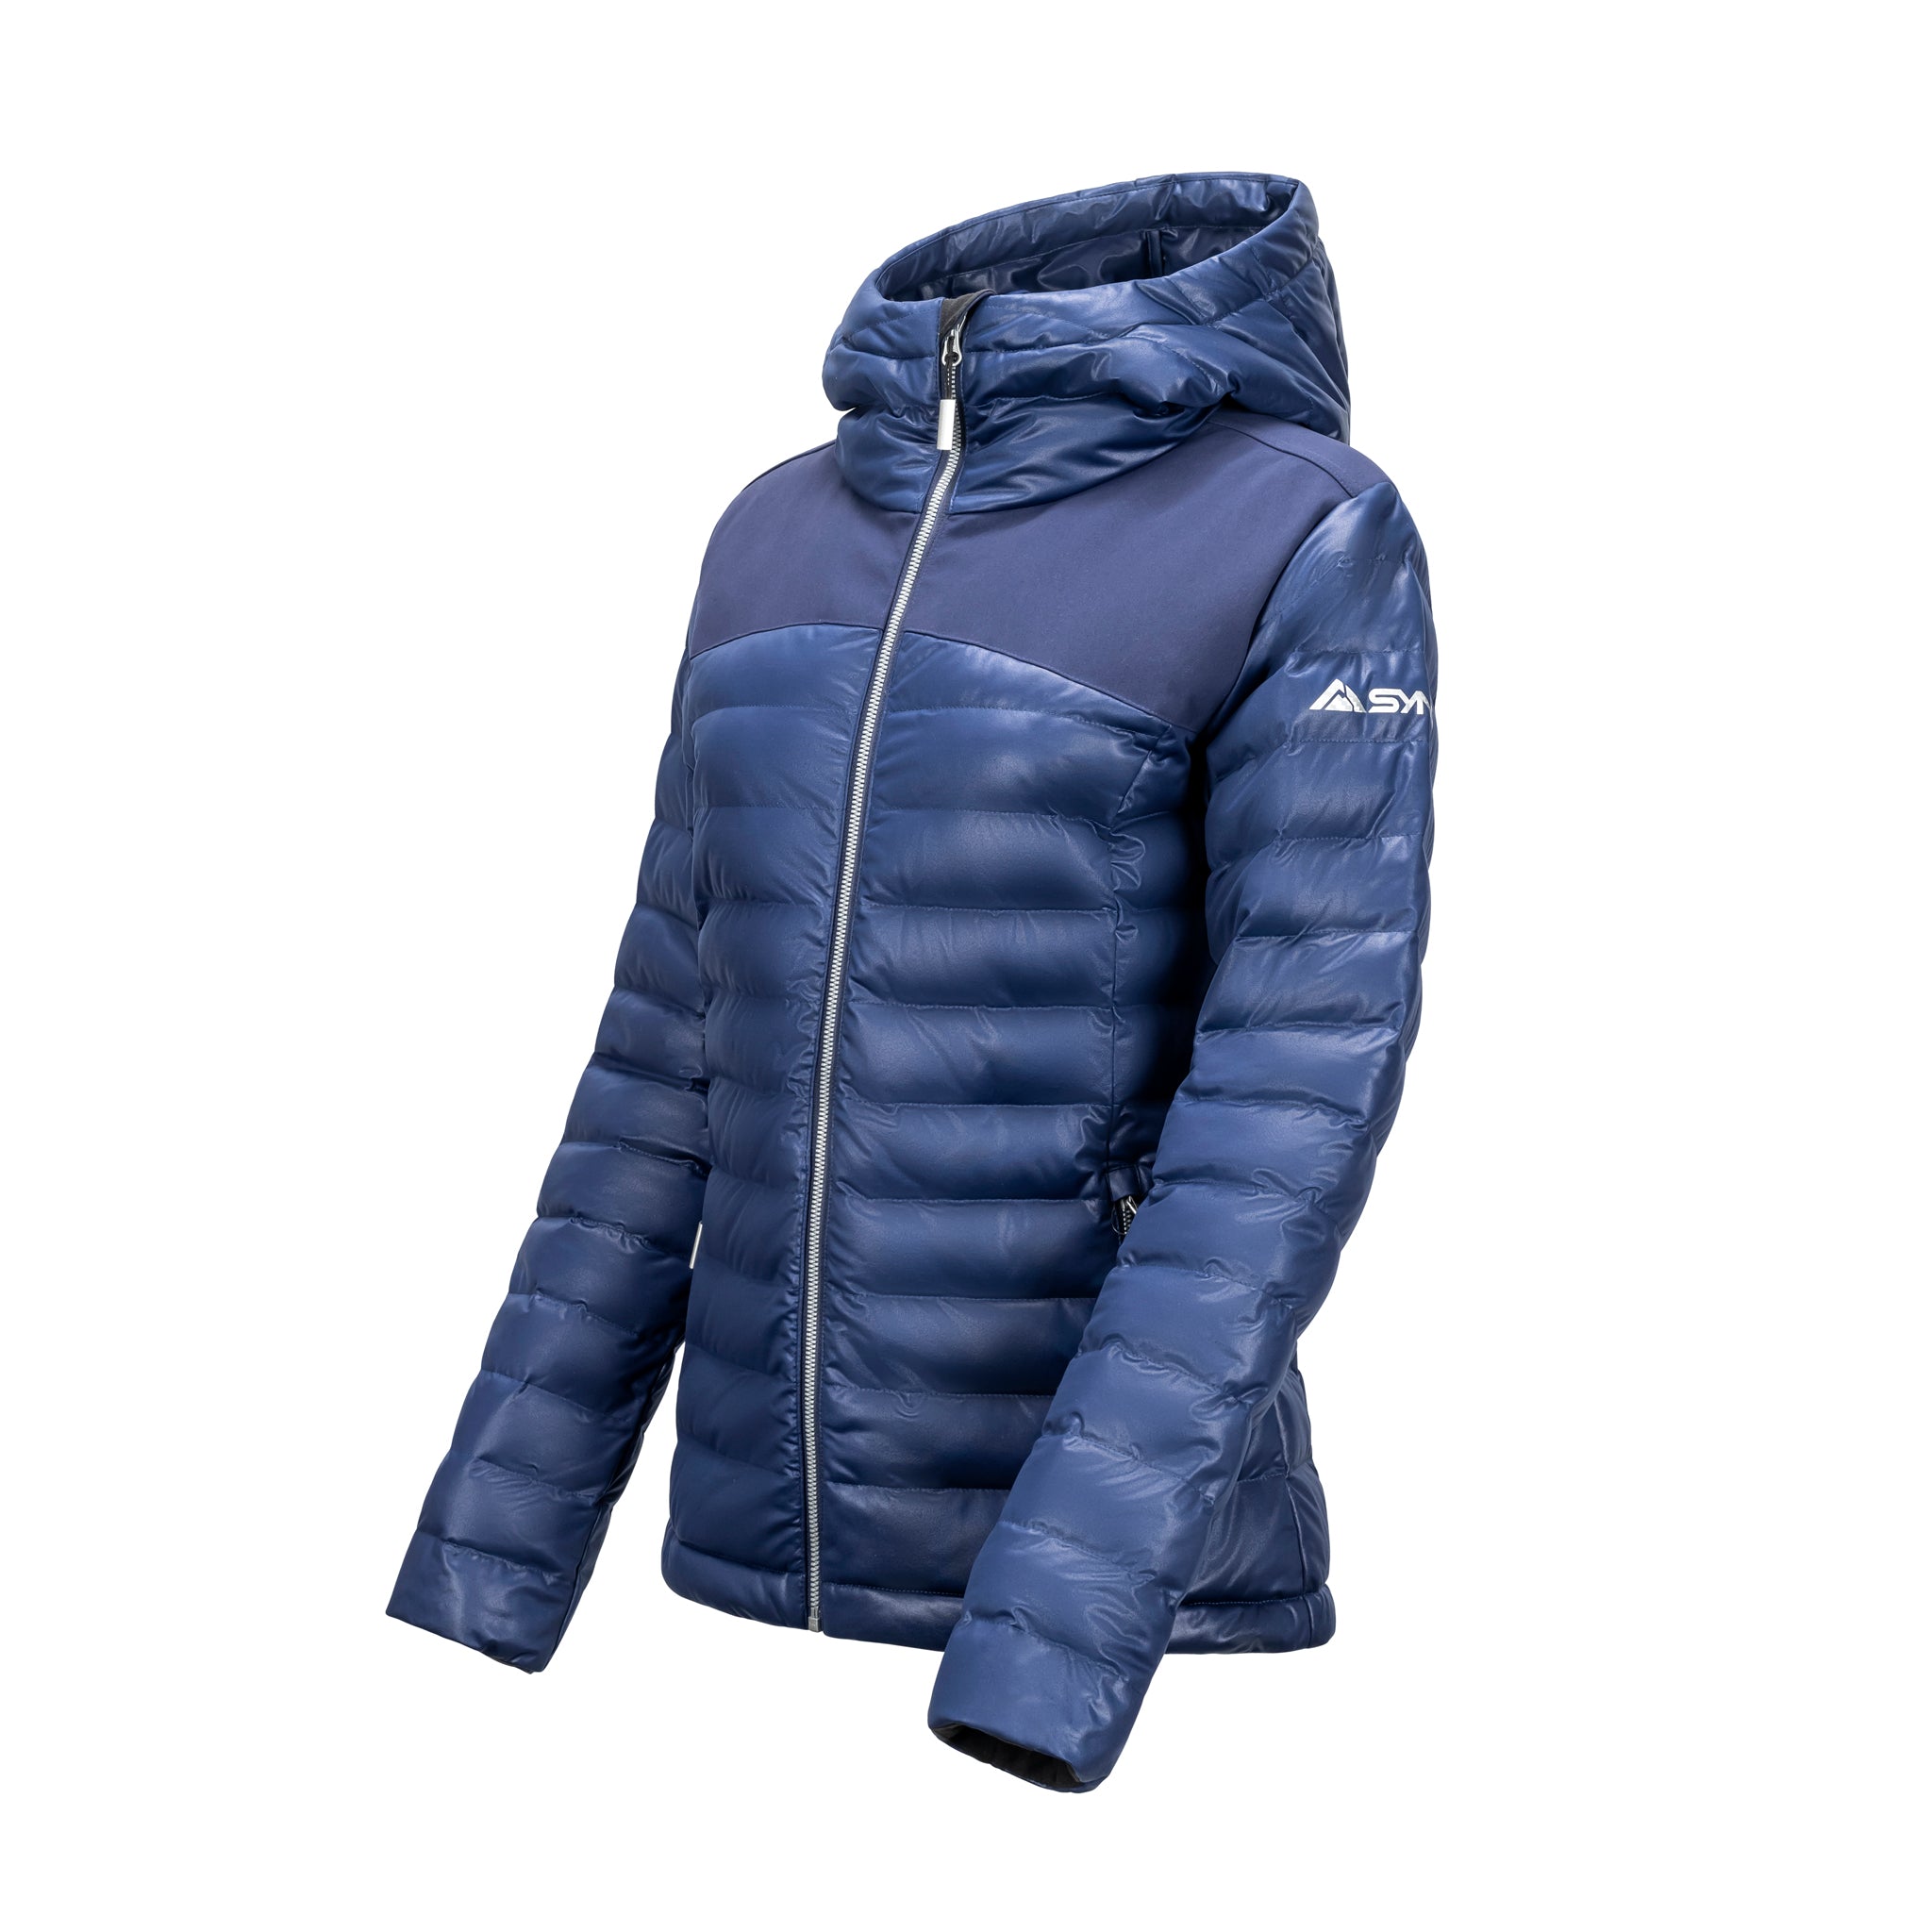 Women's Stretch Puffy Jacket, Insulated Ski Jacket